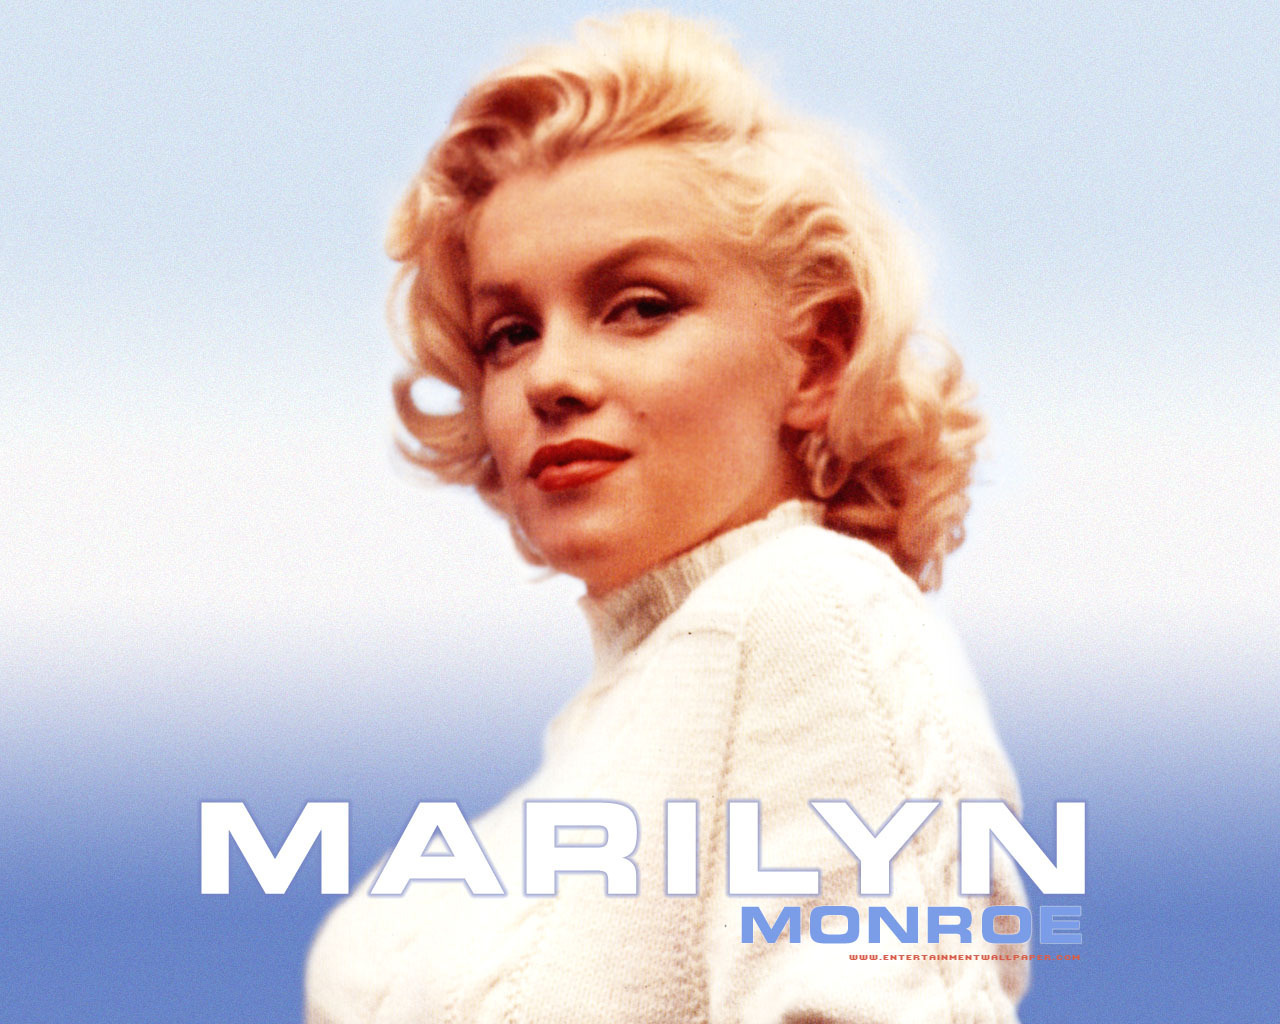 http://4.bp.blogspot.com/-CV2axOXKgF0/Tds8qXAPYLI/AAAAAAAAB2g/mSIx1YZGU-c/s1600/Marilyn+Monroe+Wallpaper+49.jpg